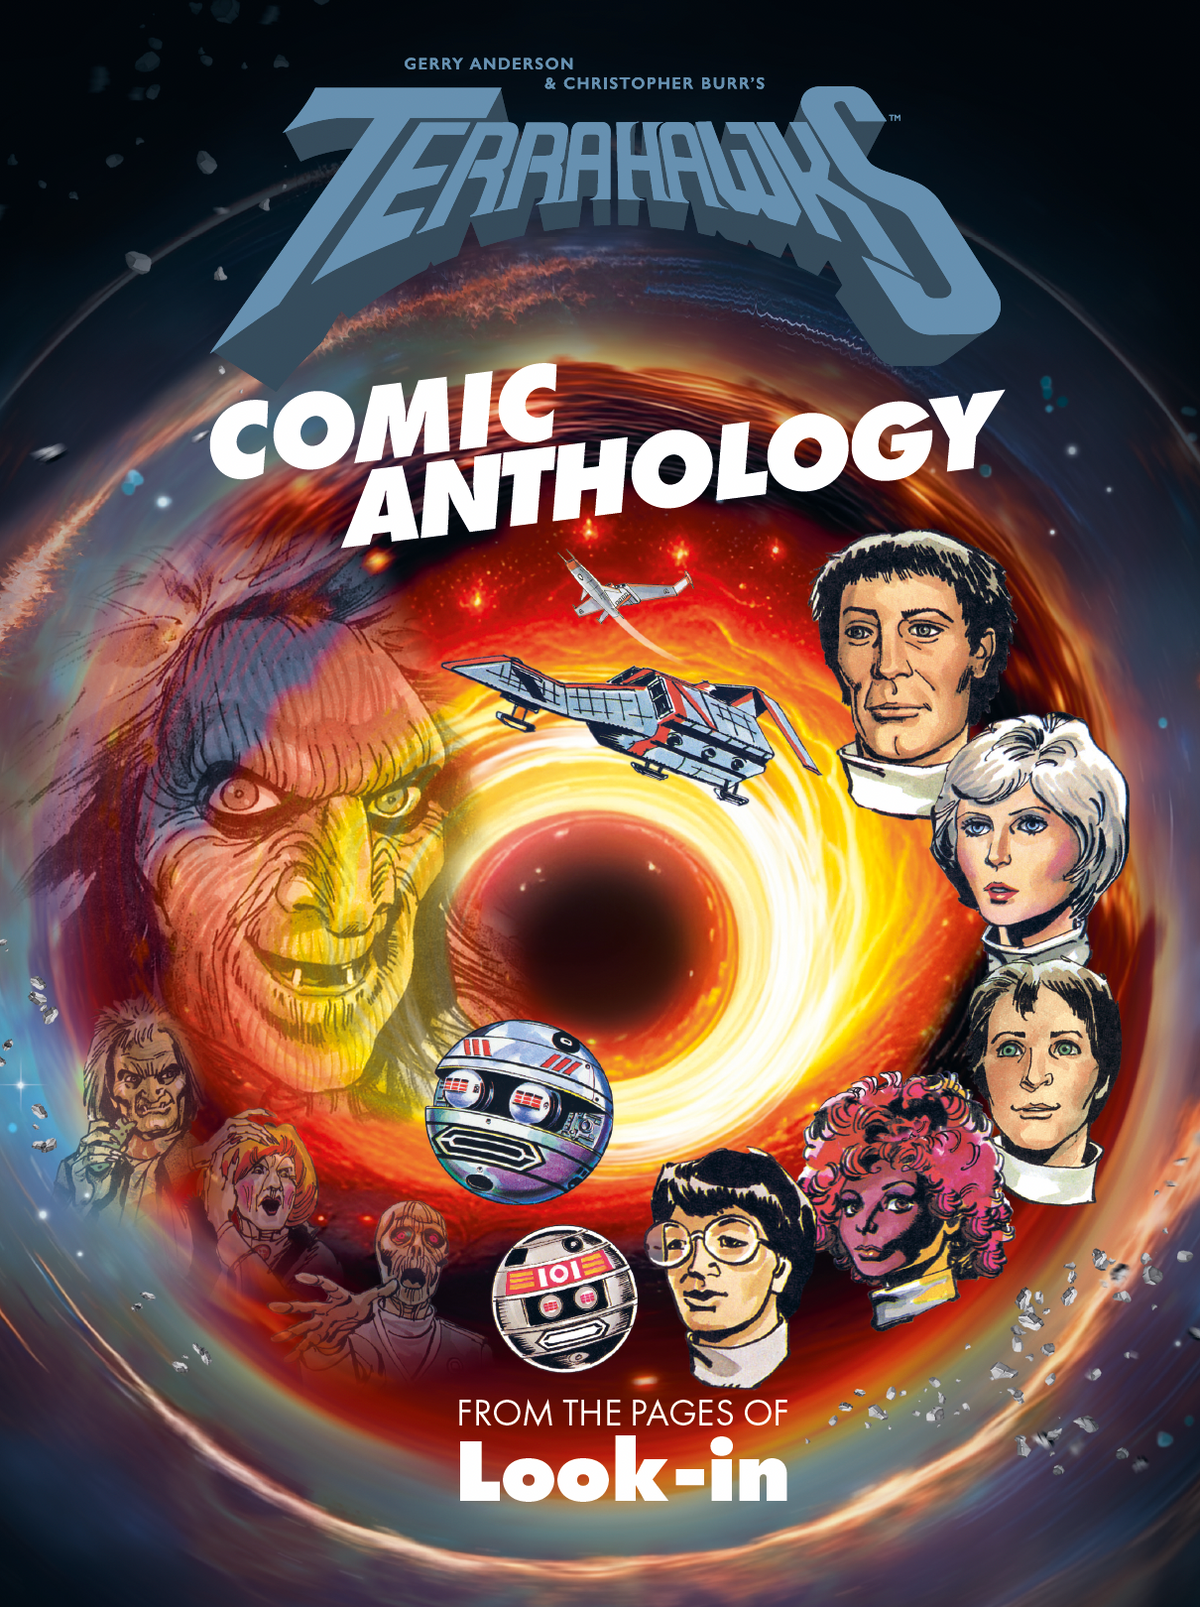 Terrahawks Comic Anthology